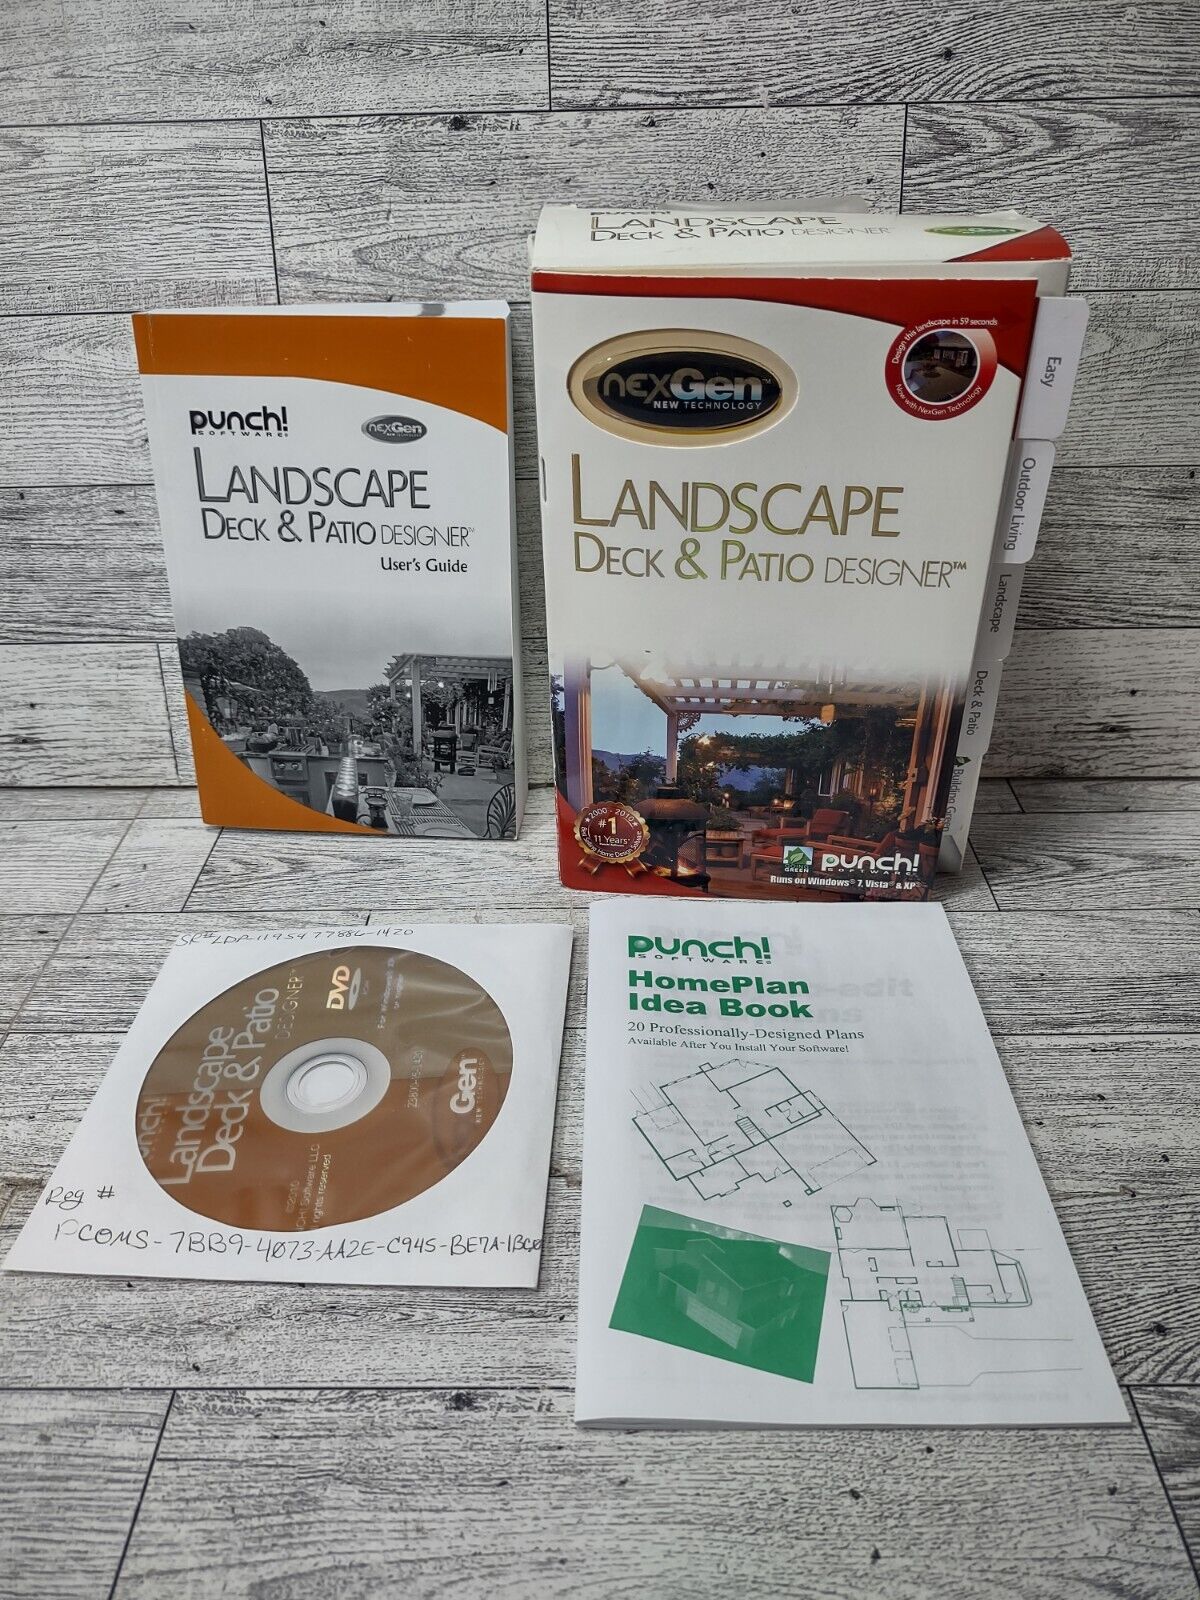 Punch Landscape Deck & Patio Design New PC Software 